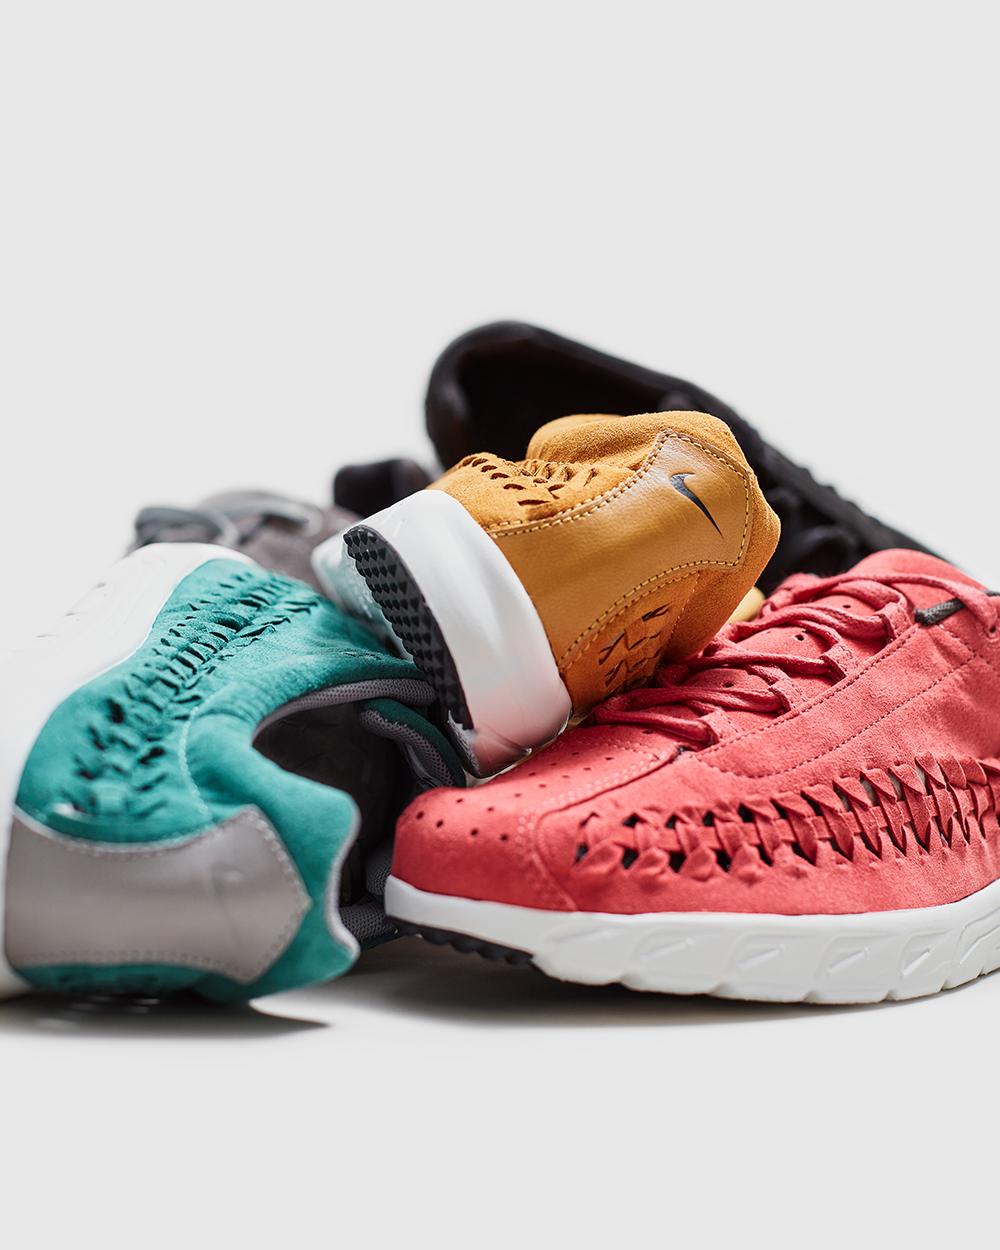 Sneaker Watch: Nike MayFly OG Woven Colourways